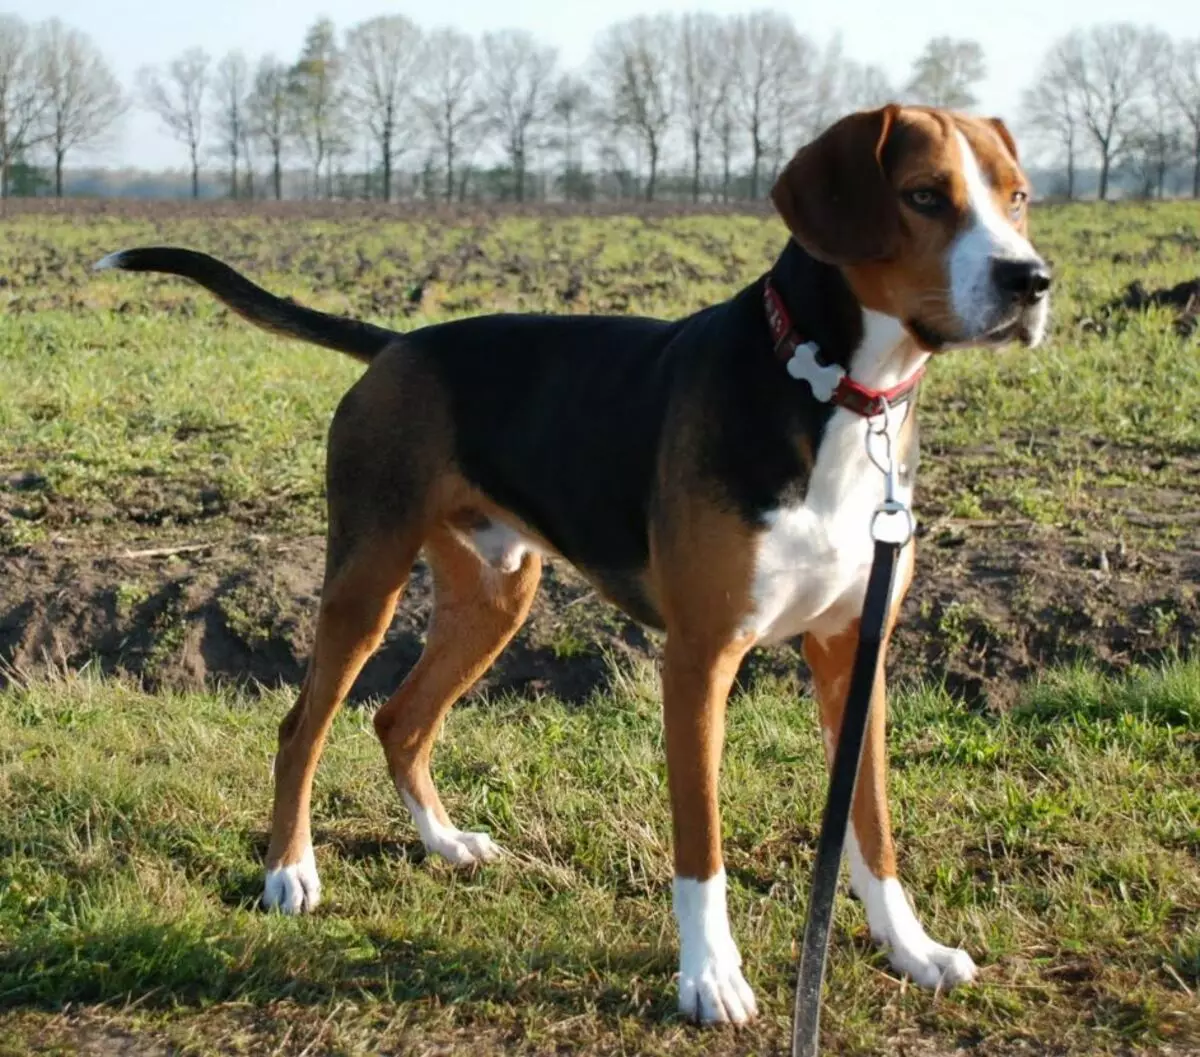 फॉक्स Haounds (30 तस्वीरें): अंग्रेजी और अमेरिकी फॉक्स Khounds का विवरण, नस्लों के चर और कुत्तों की विशेषताओं 12205_24